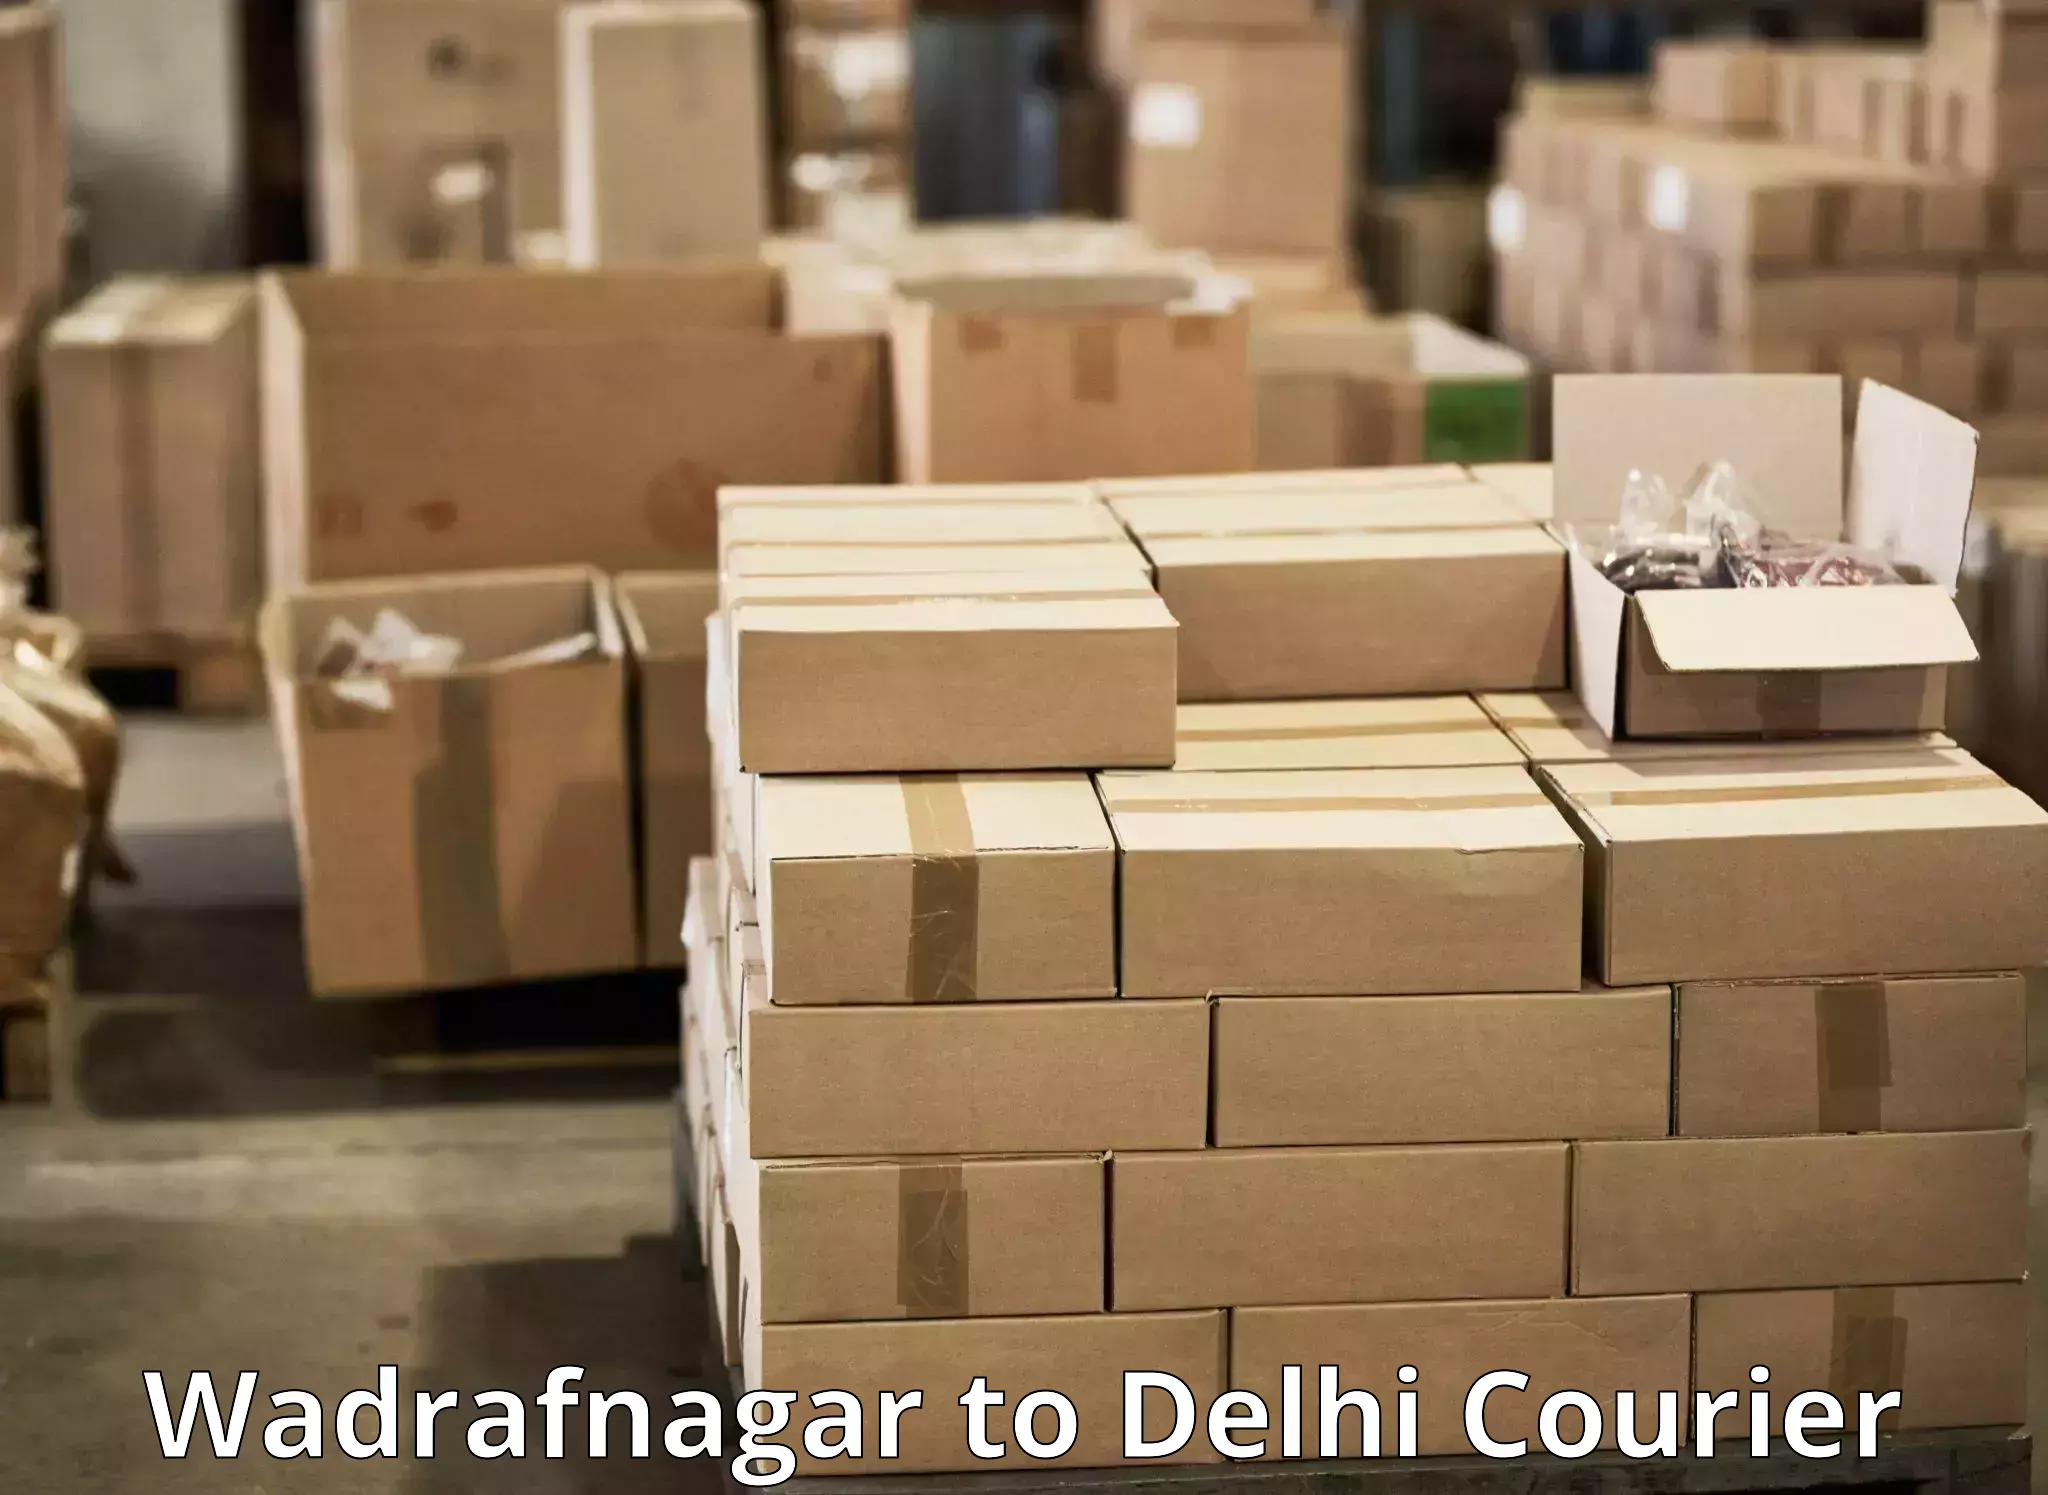 High-efficiency logistics Wadrafnagar to Indraprastha